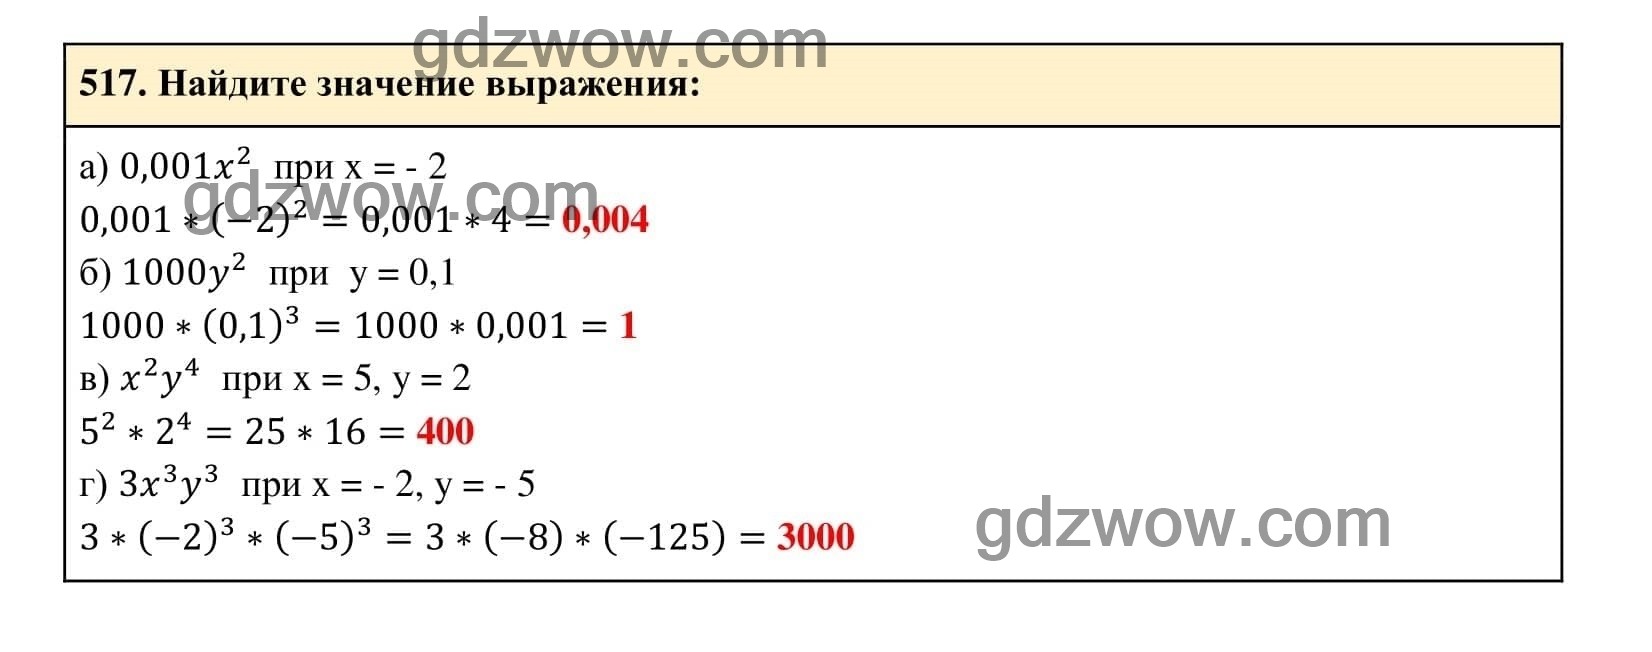 Упражнение 517 - ГДЗ по Алгебре 7 класс Учебник Макарычев (решебник) - GDZwow